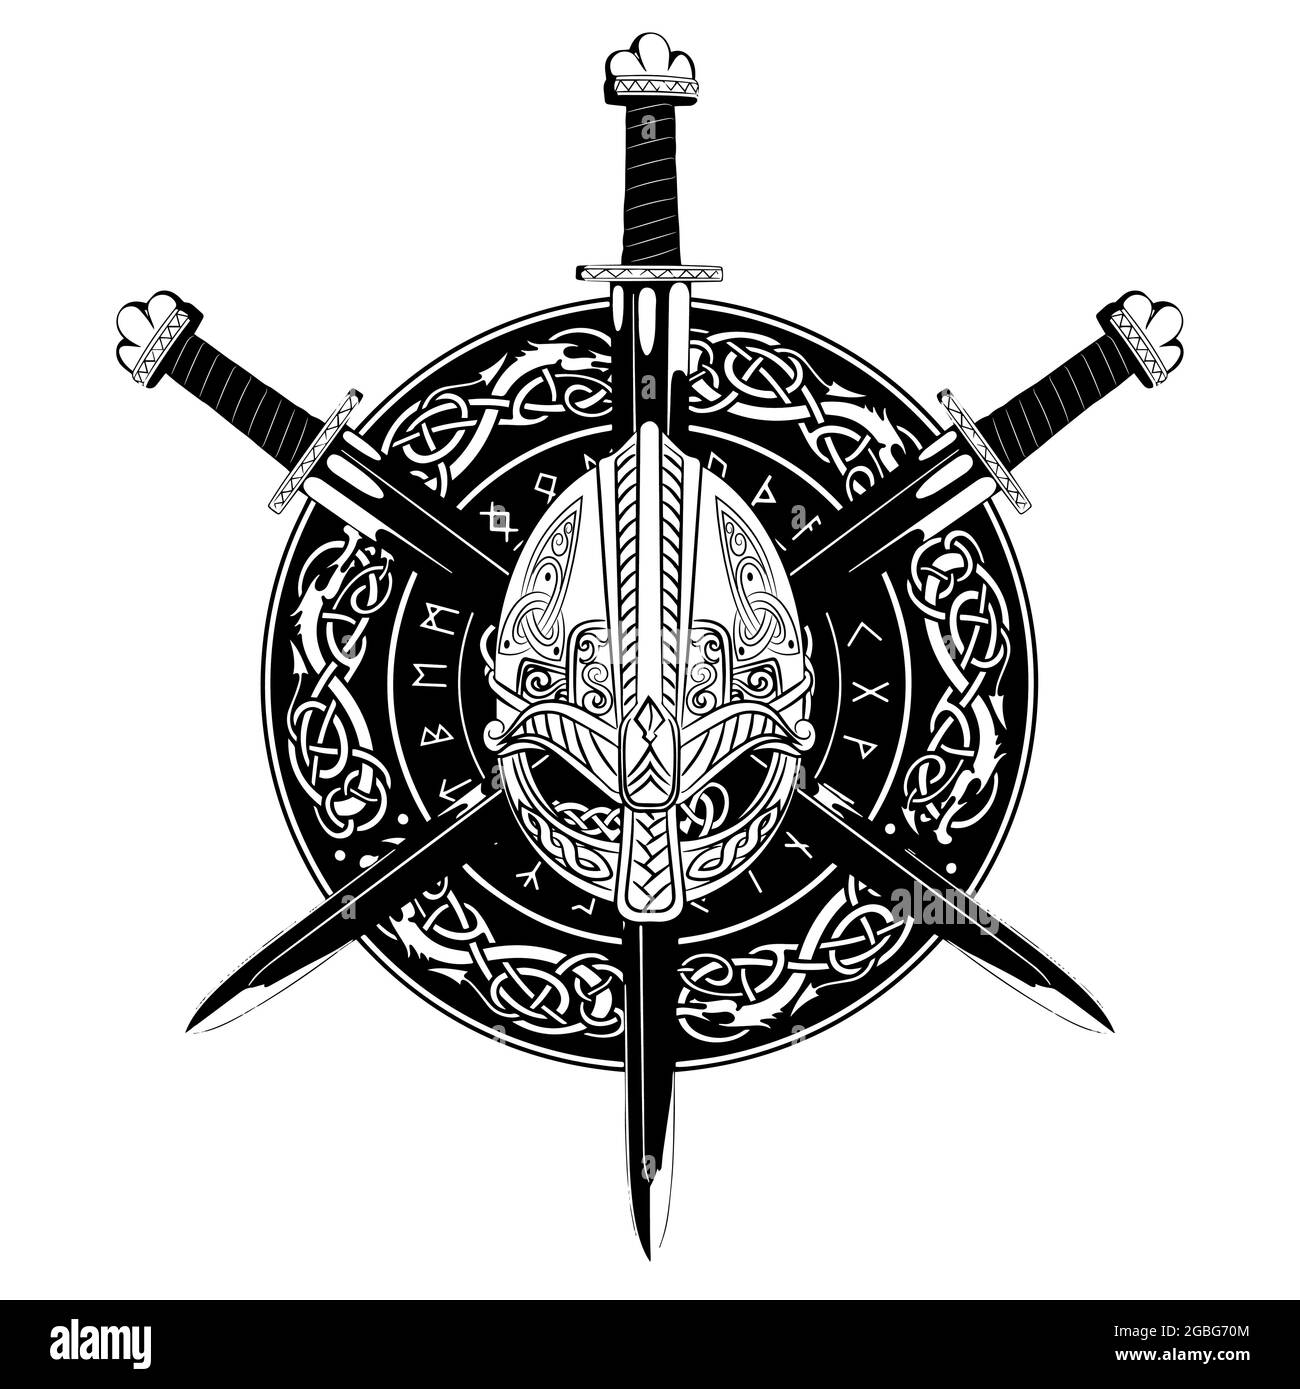 Casco vichingo, ha attraversato la spada vichinga e in una corona di modello scandinavo e scudo vichingo Illustrazione Vettoriale